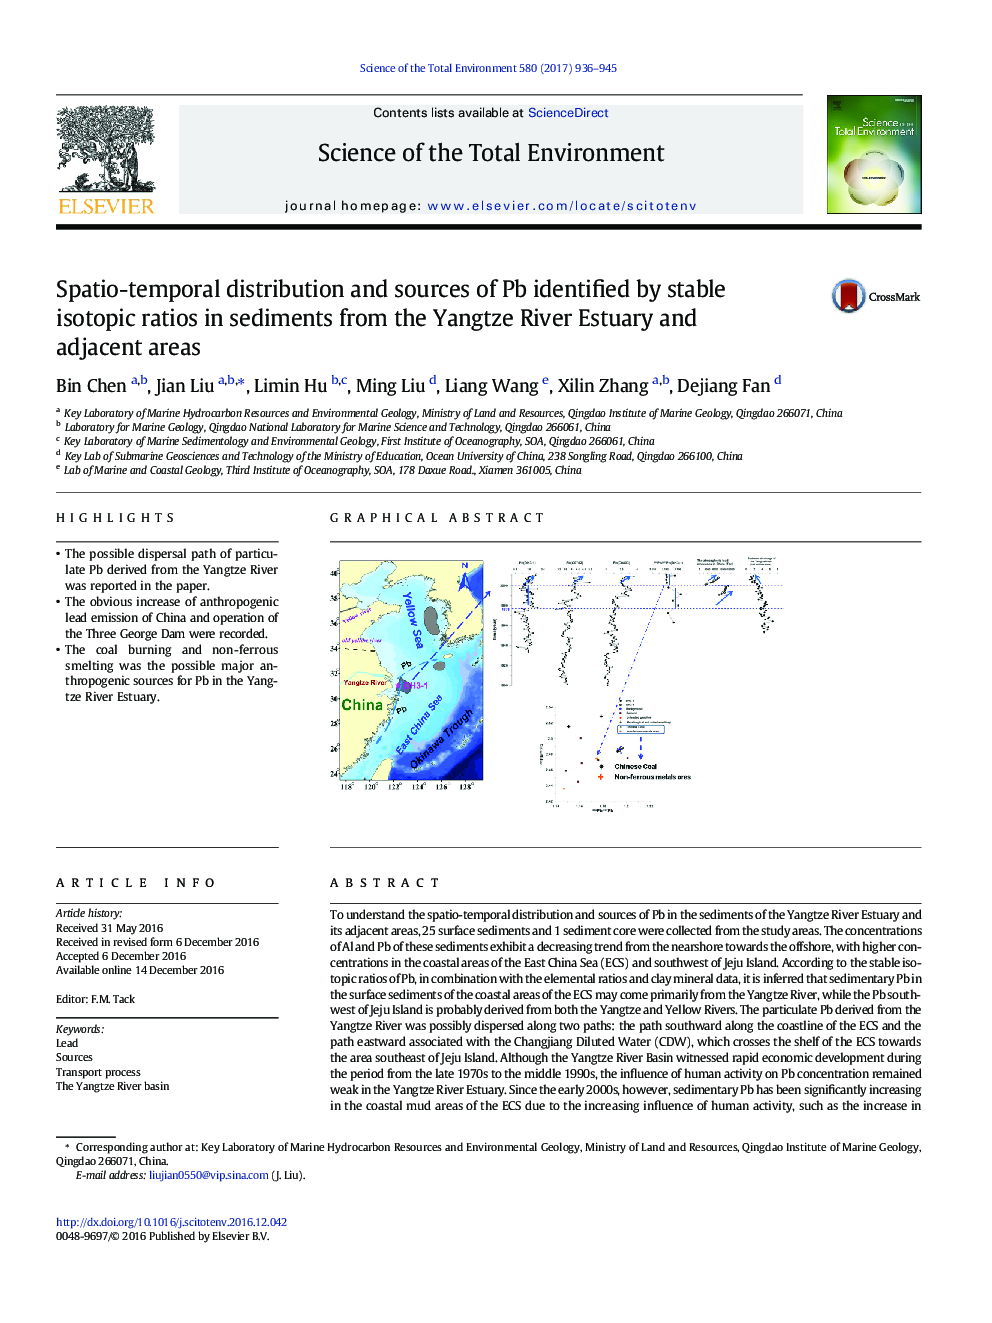 توزیع اسپکتیو-زمان و منابع پتاسیم به واسطه نسبت ایزوتوپ پایدار در رسوبات رودخانه یانگ تسه و مناطق مجاور 